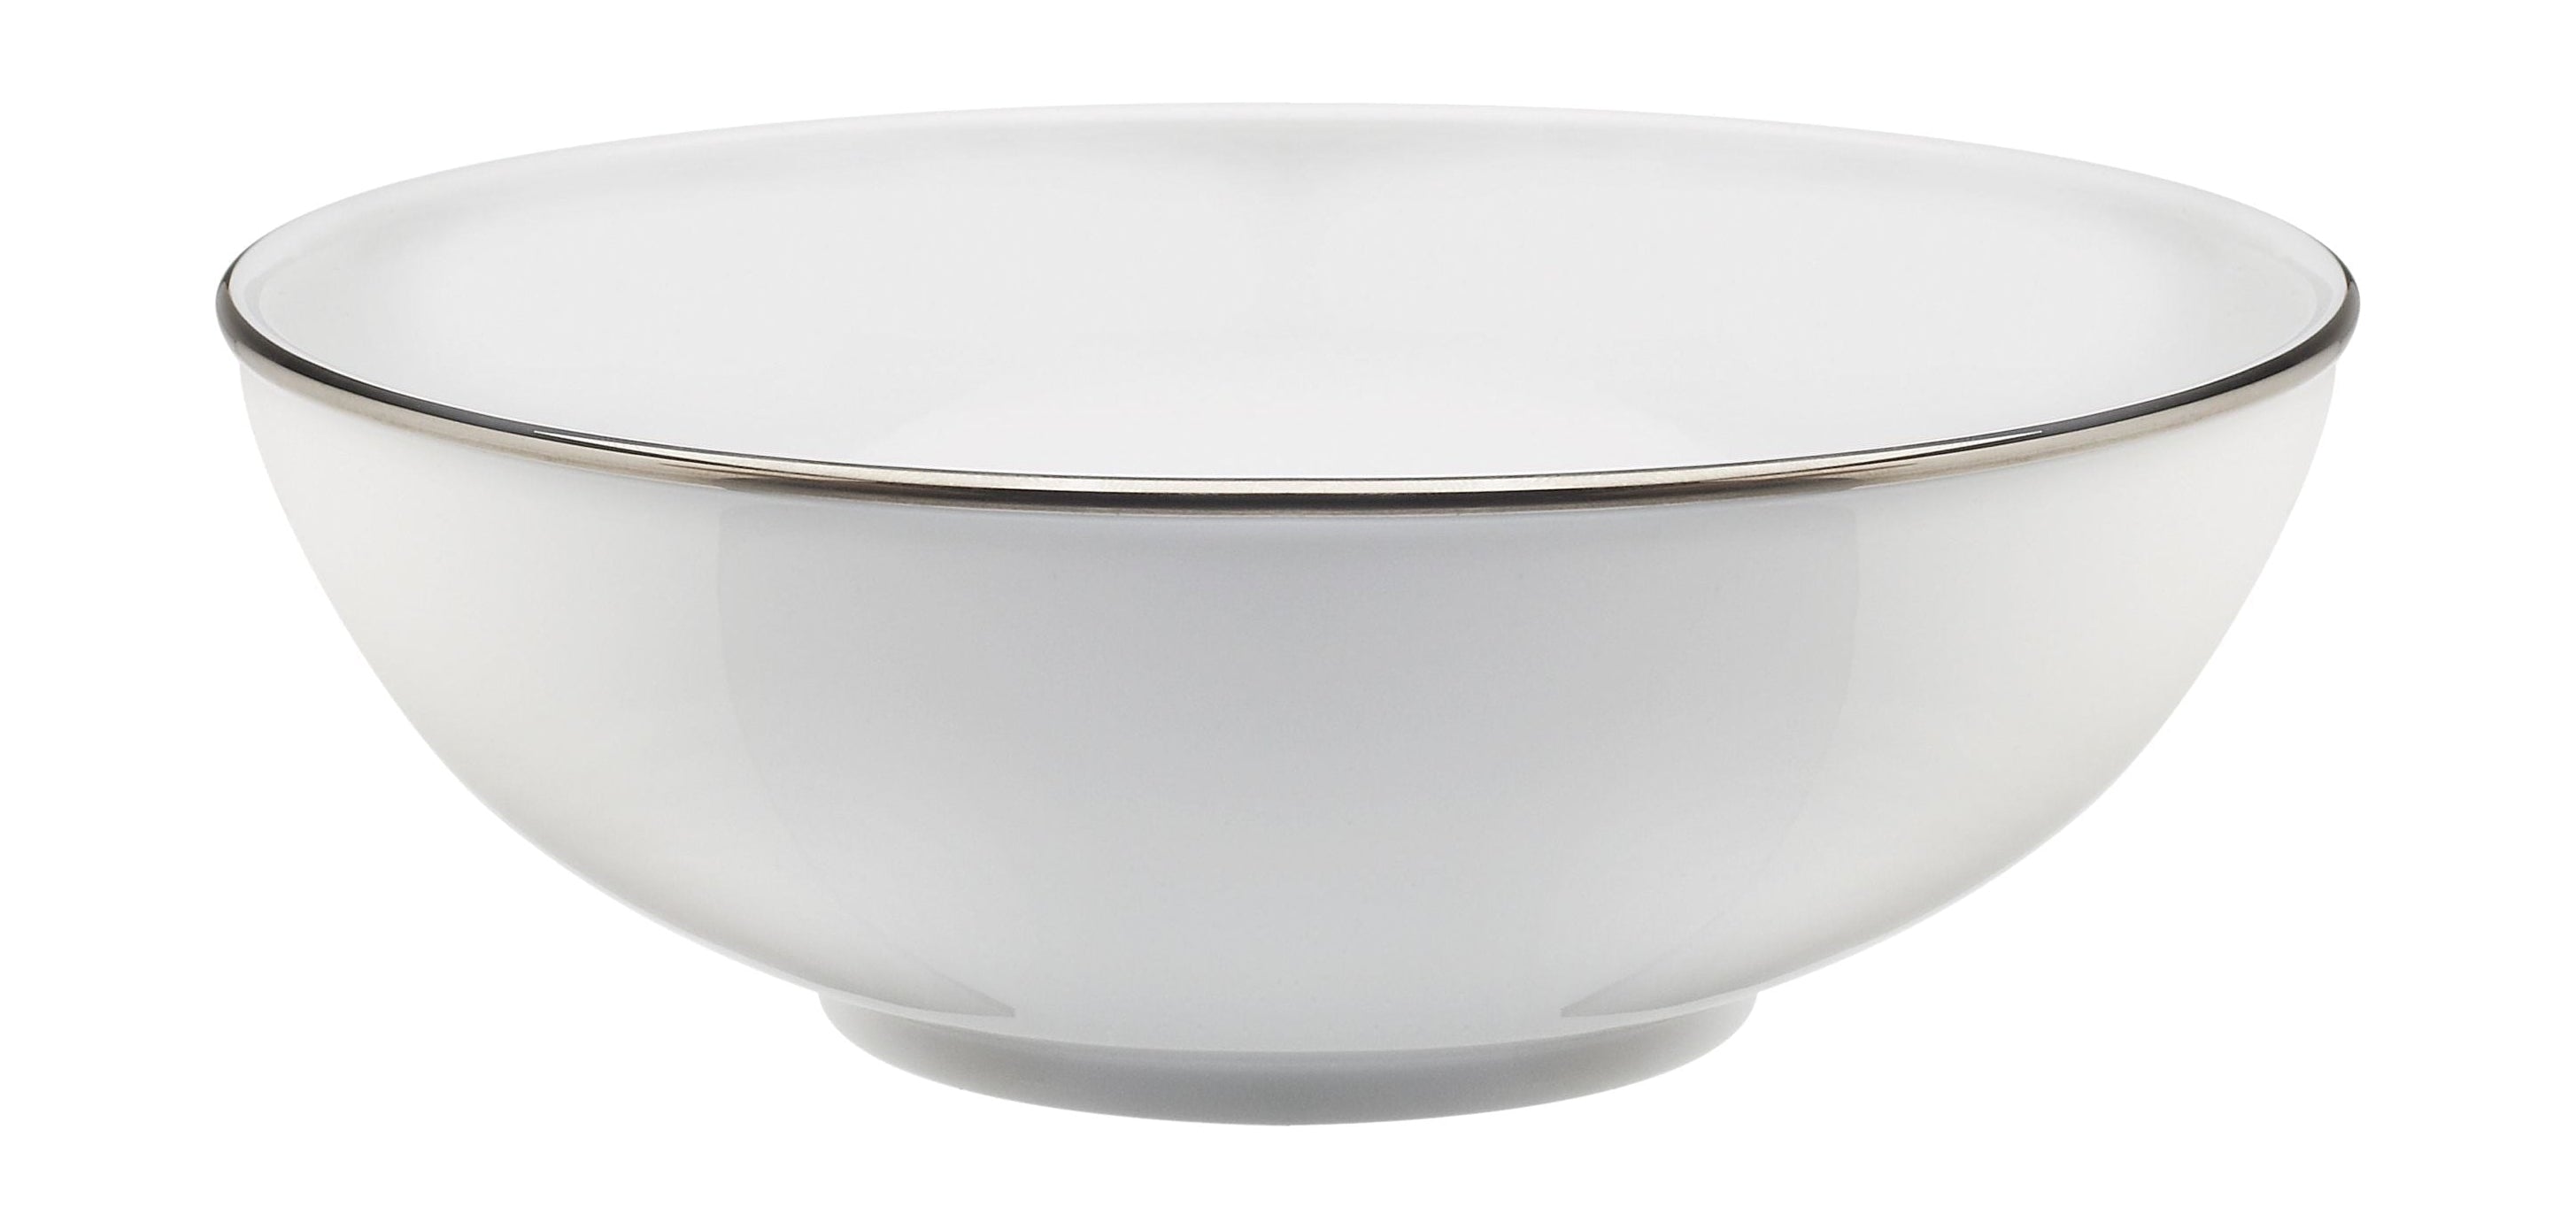 Rörstrand Corona Partion Bowl, 17 cm